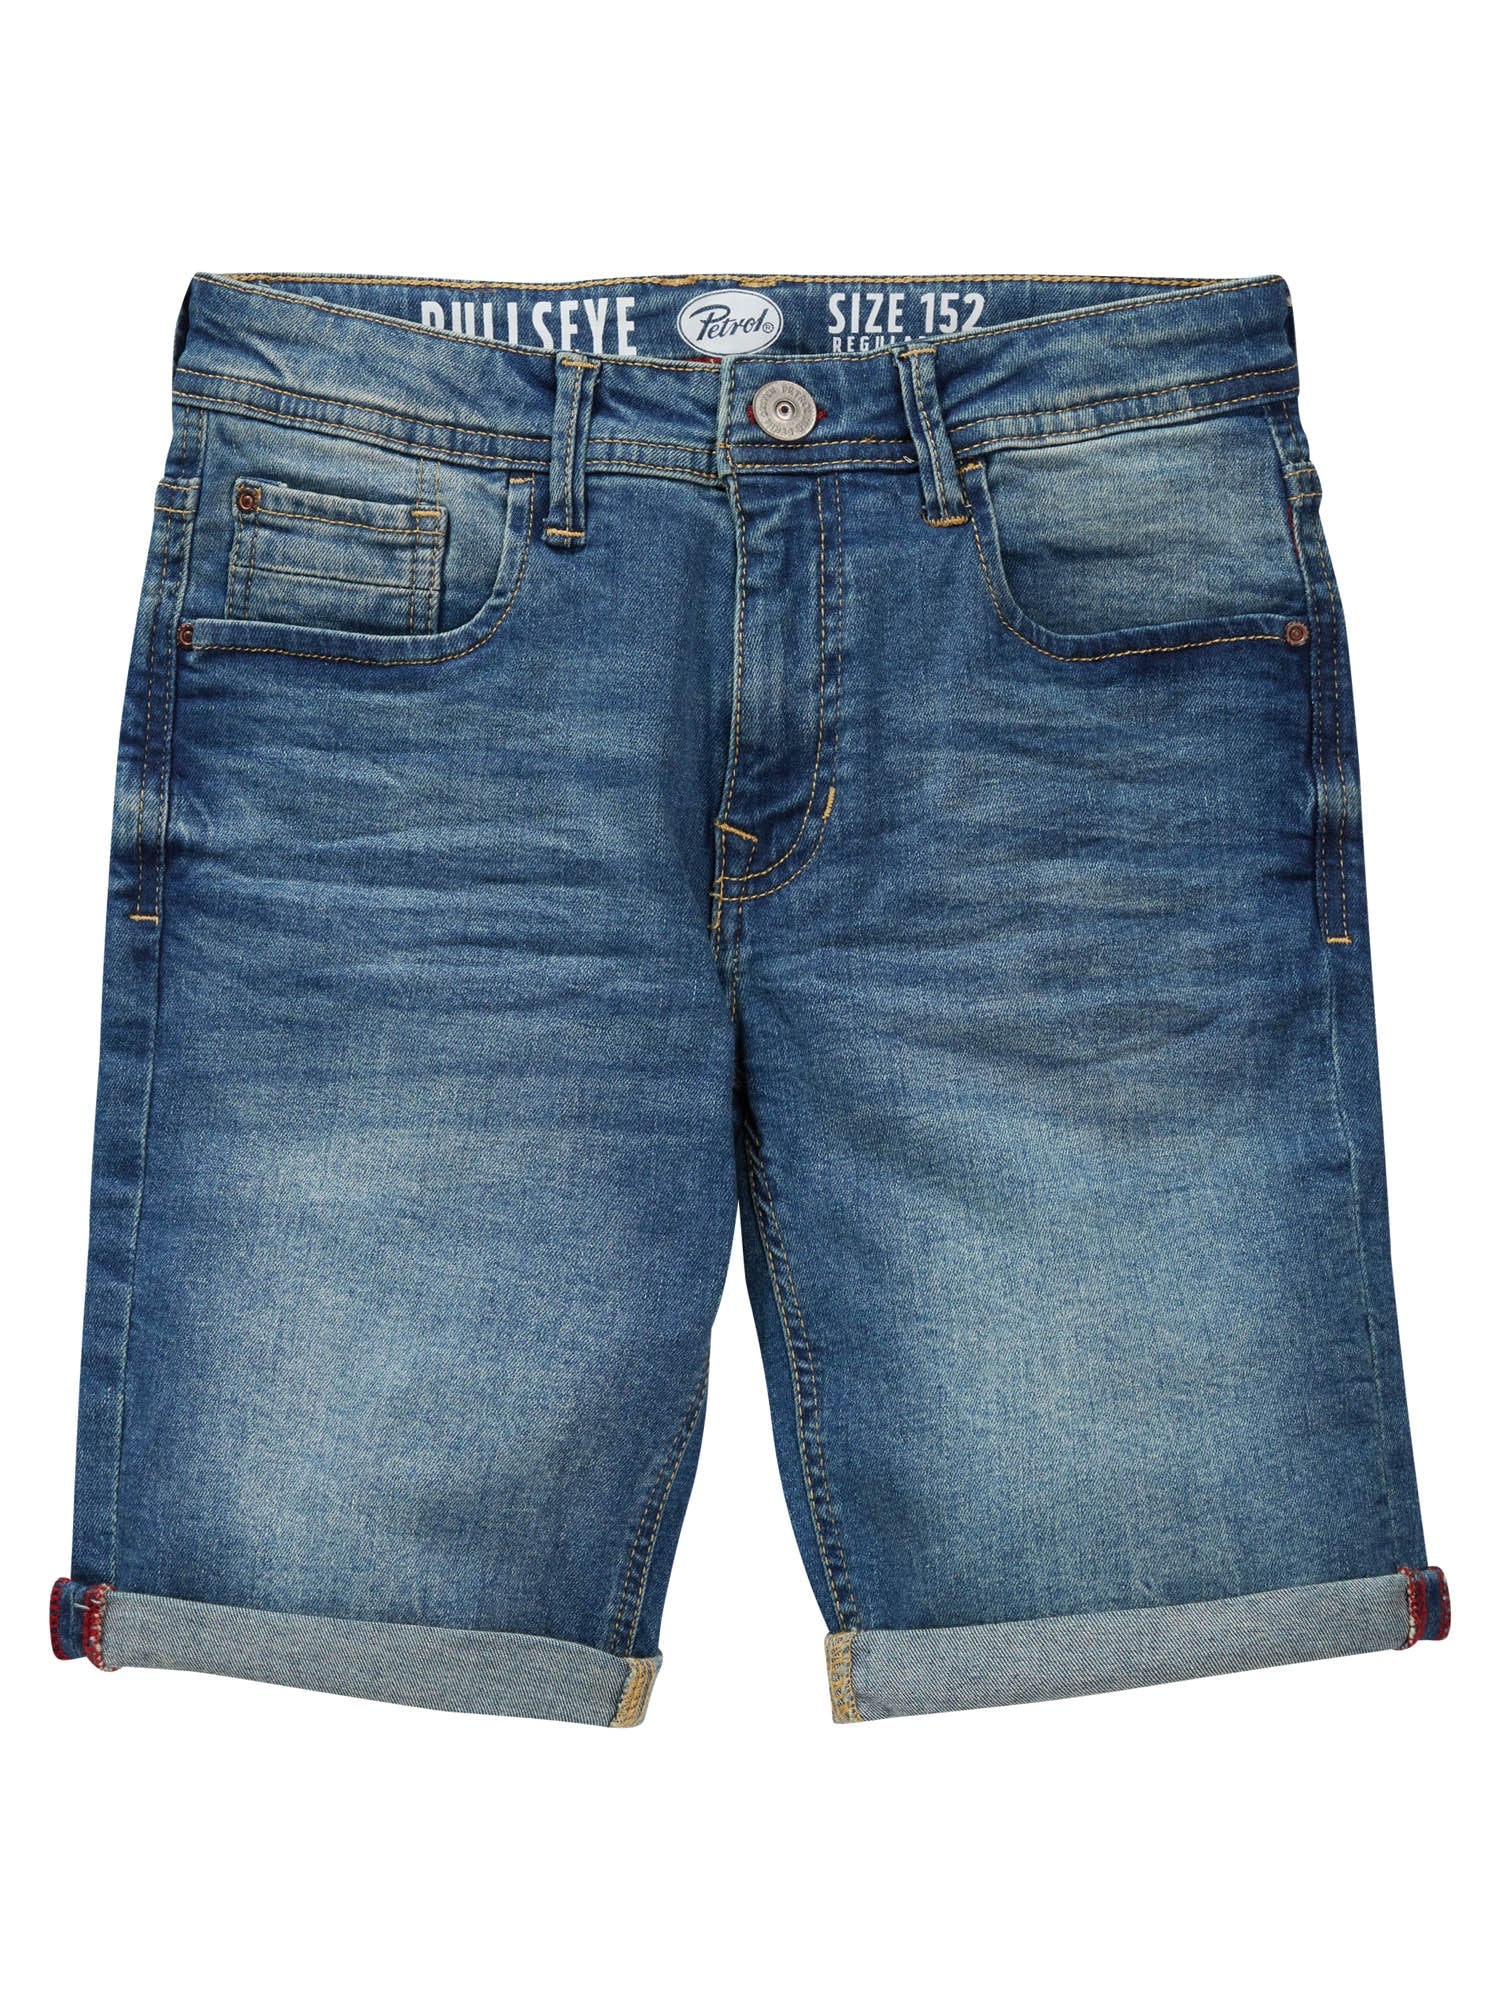 Jongens Jeans short five-pocket van Petrol in de kleur Medium Blue in maat 176.